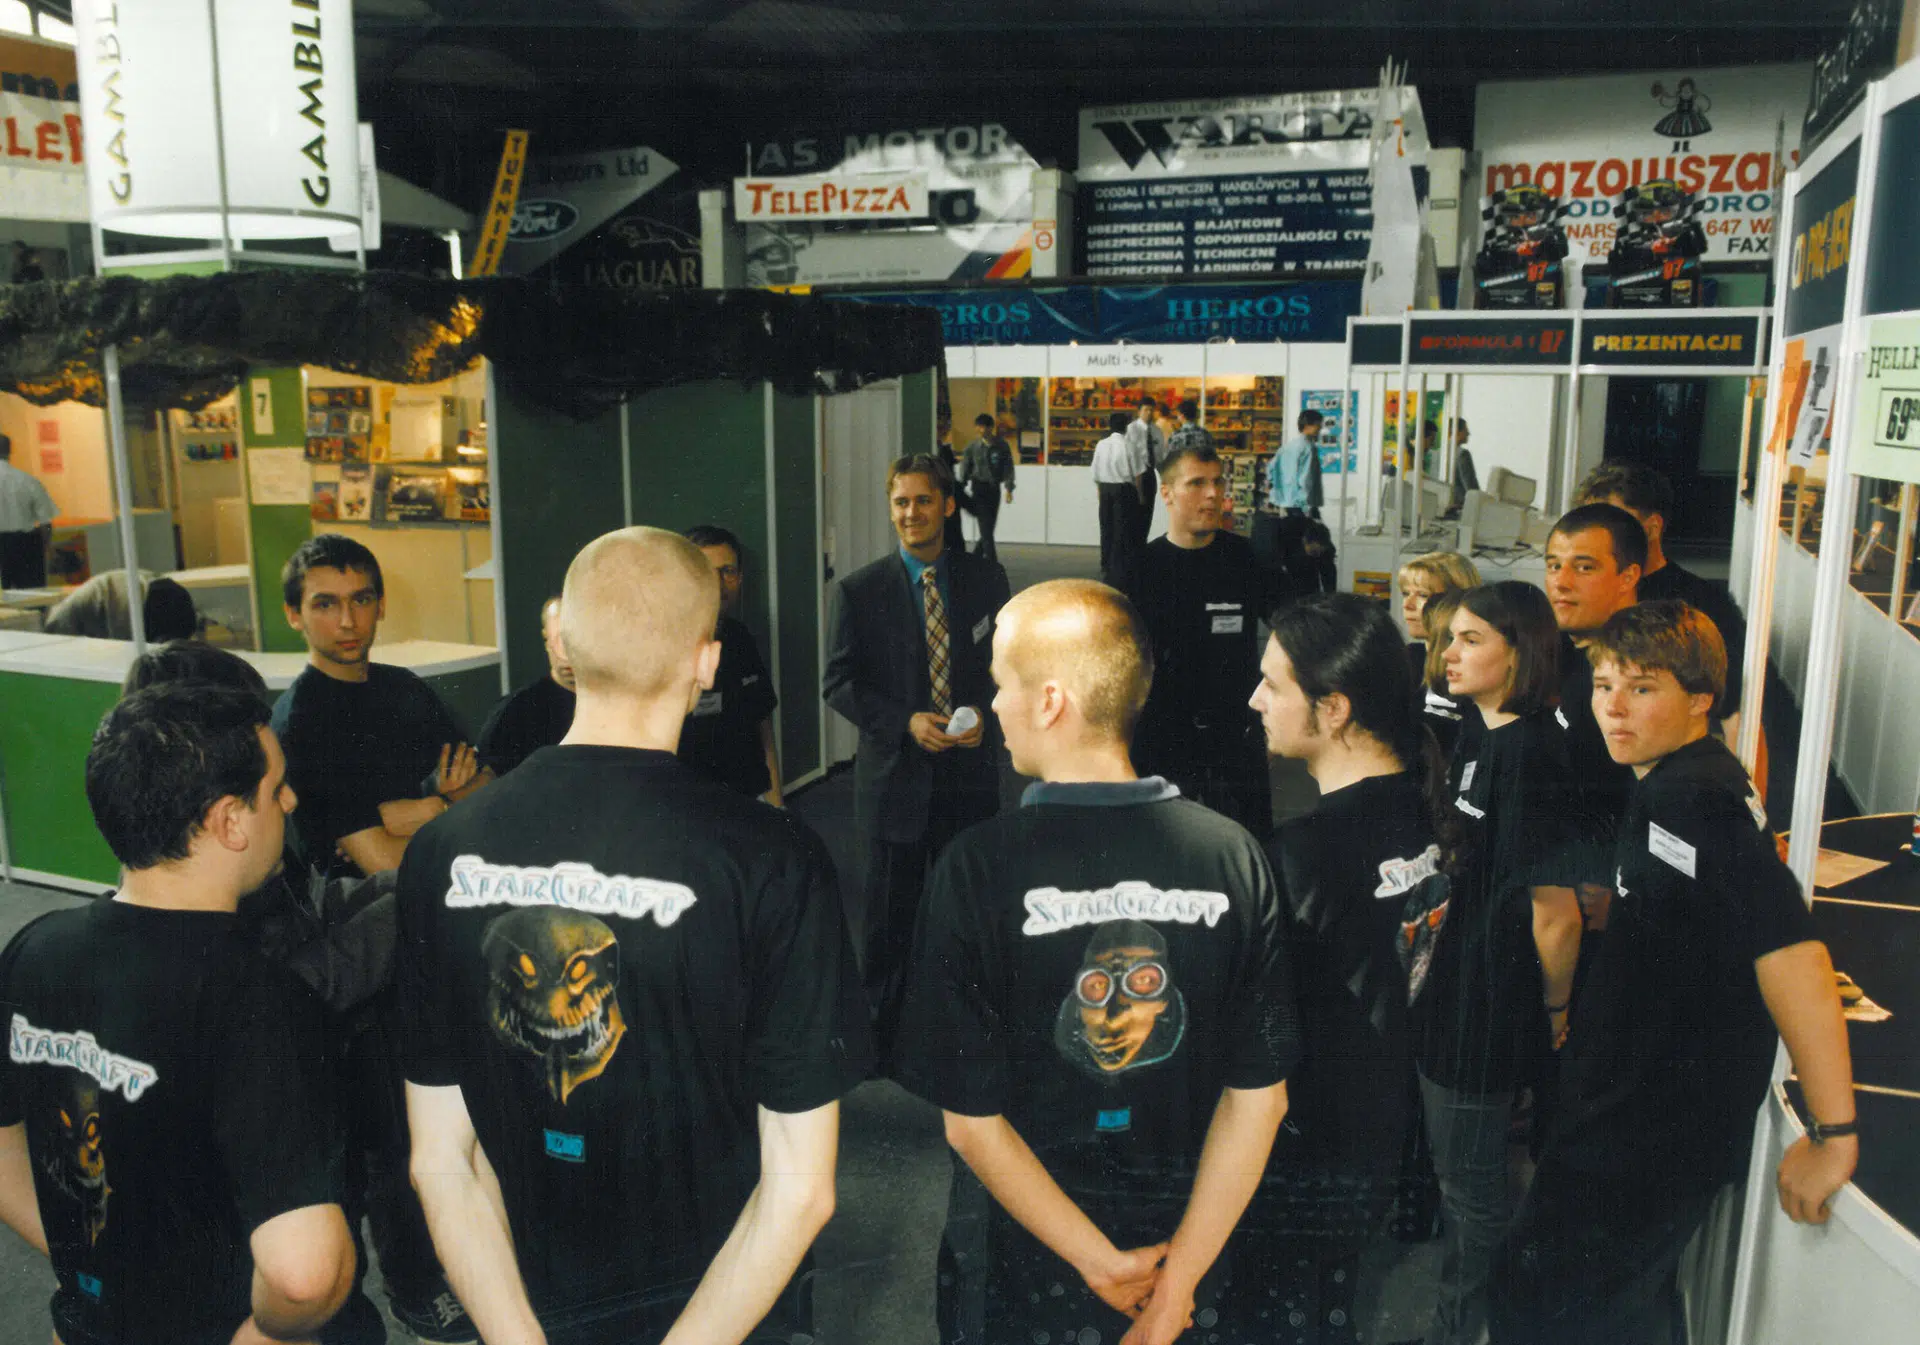 O começo da CD Projekt em 1994